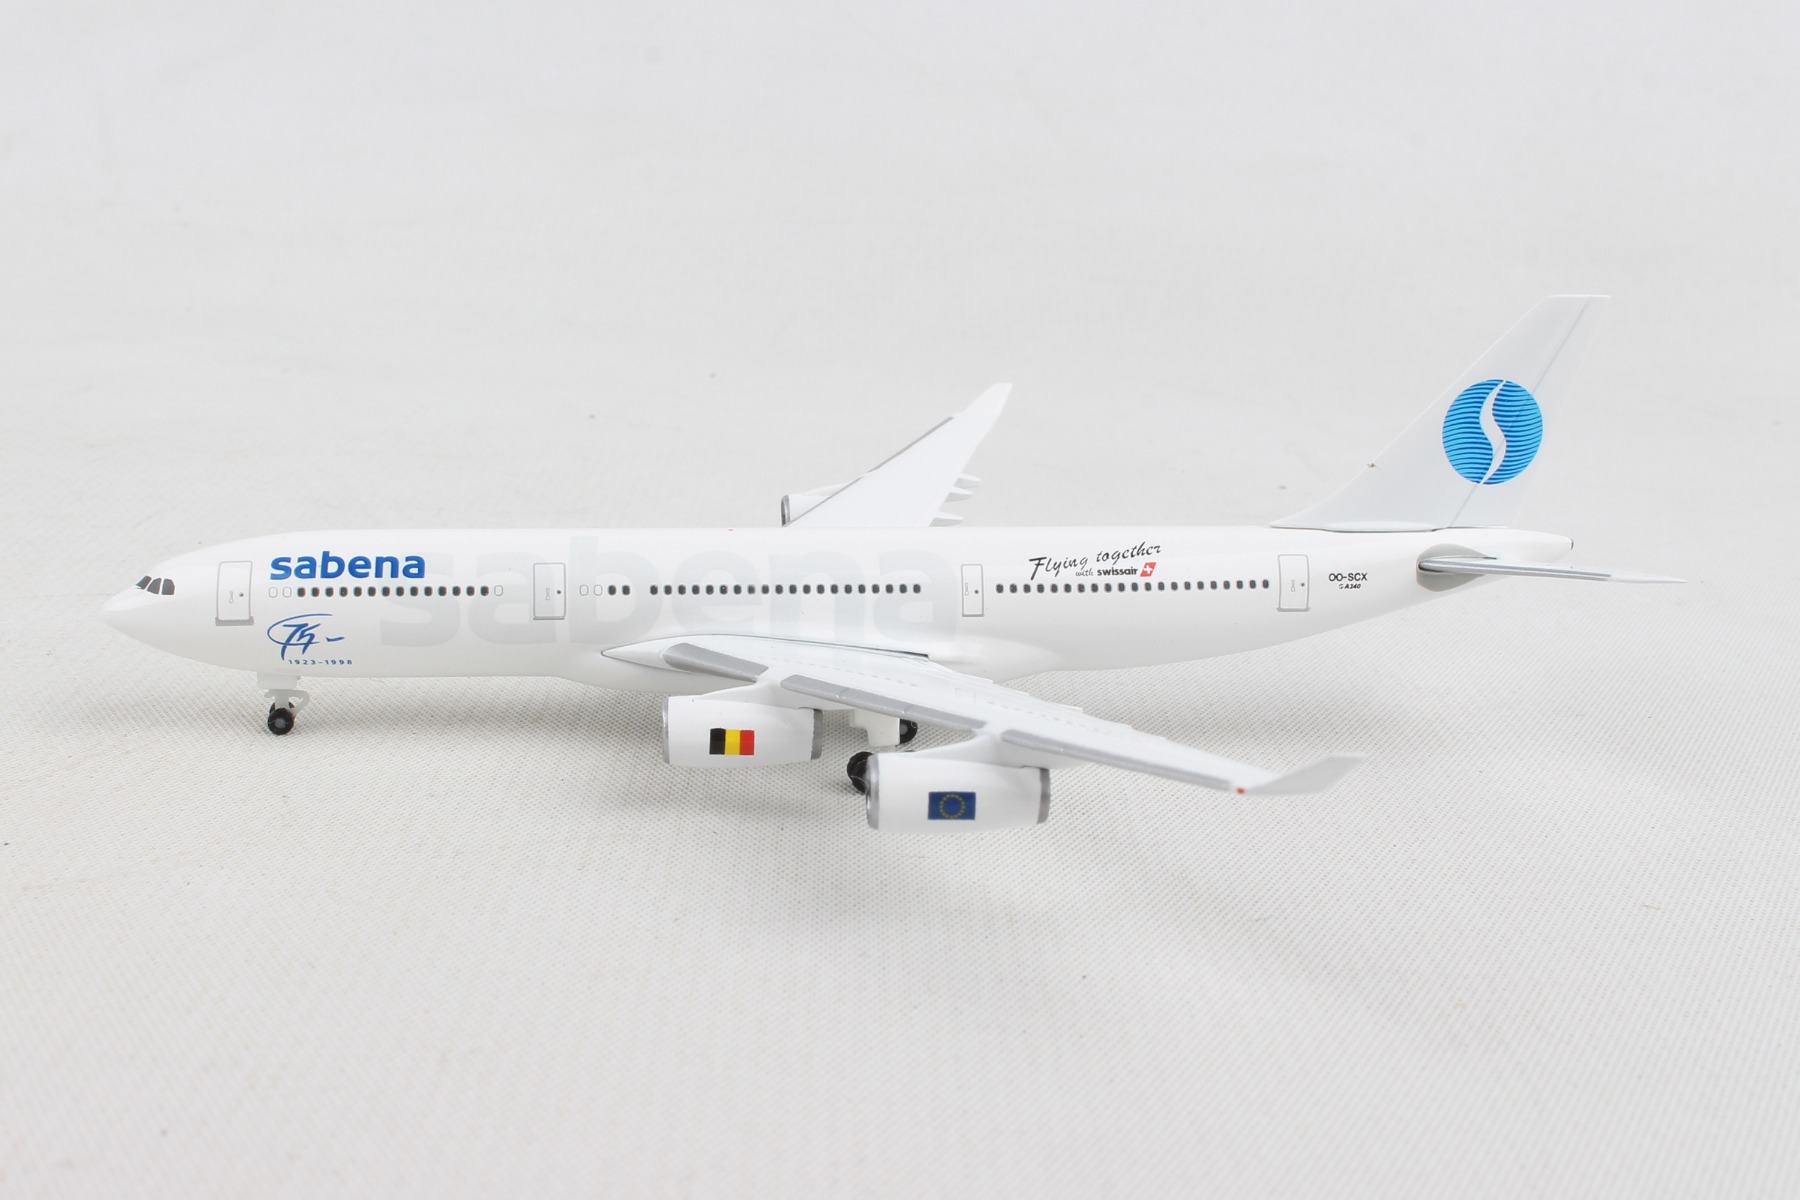 HERPA WINGS 1/500 SCALE SABENA A340-200 1/500BNHE532655